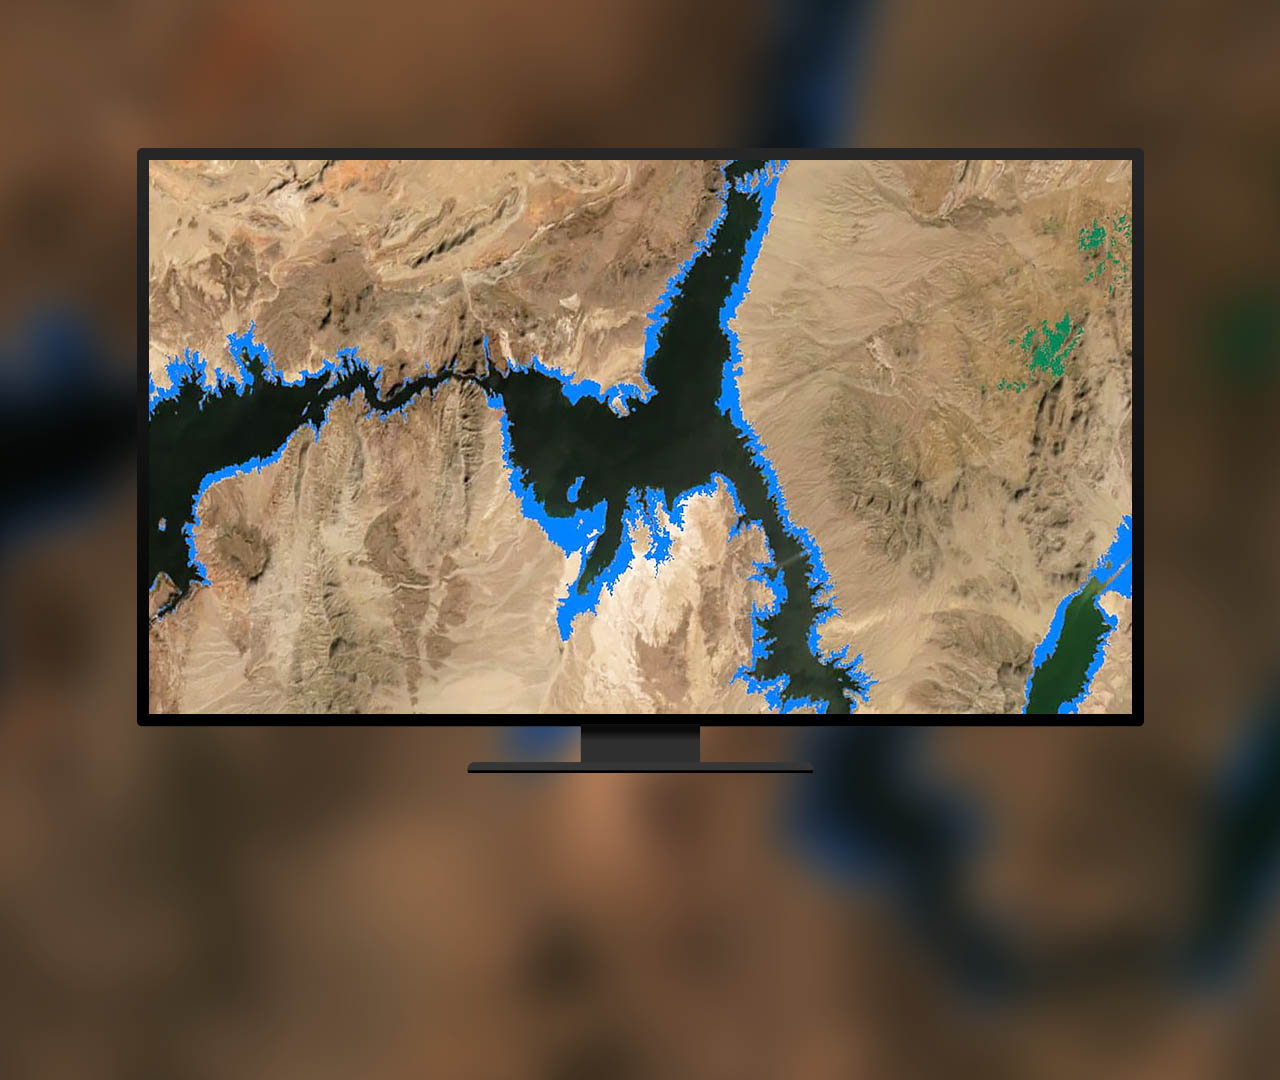 地图上以蓝色突出显示了一条河流的大小变化